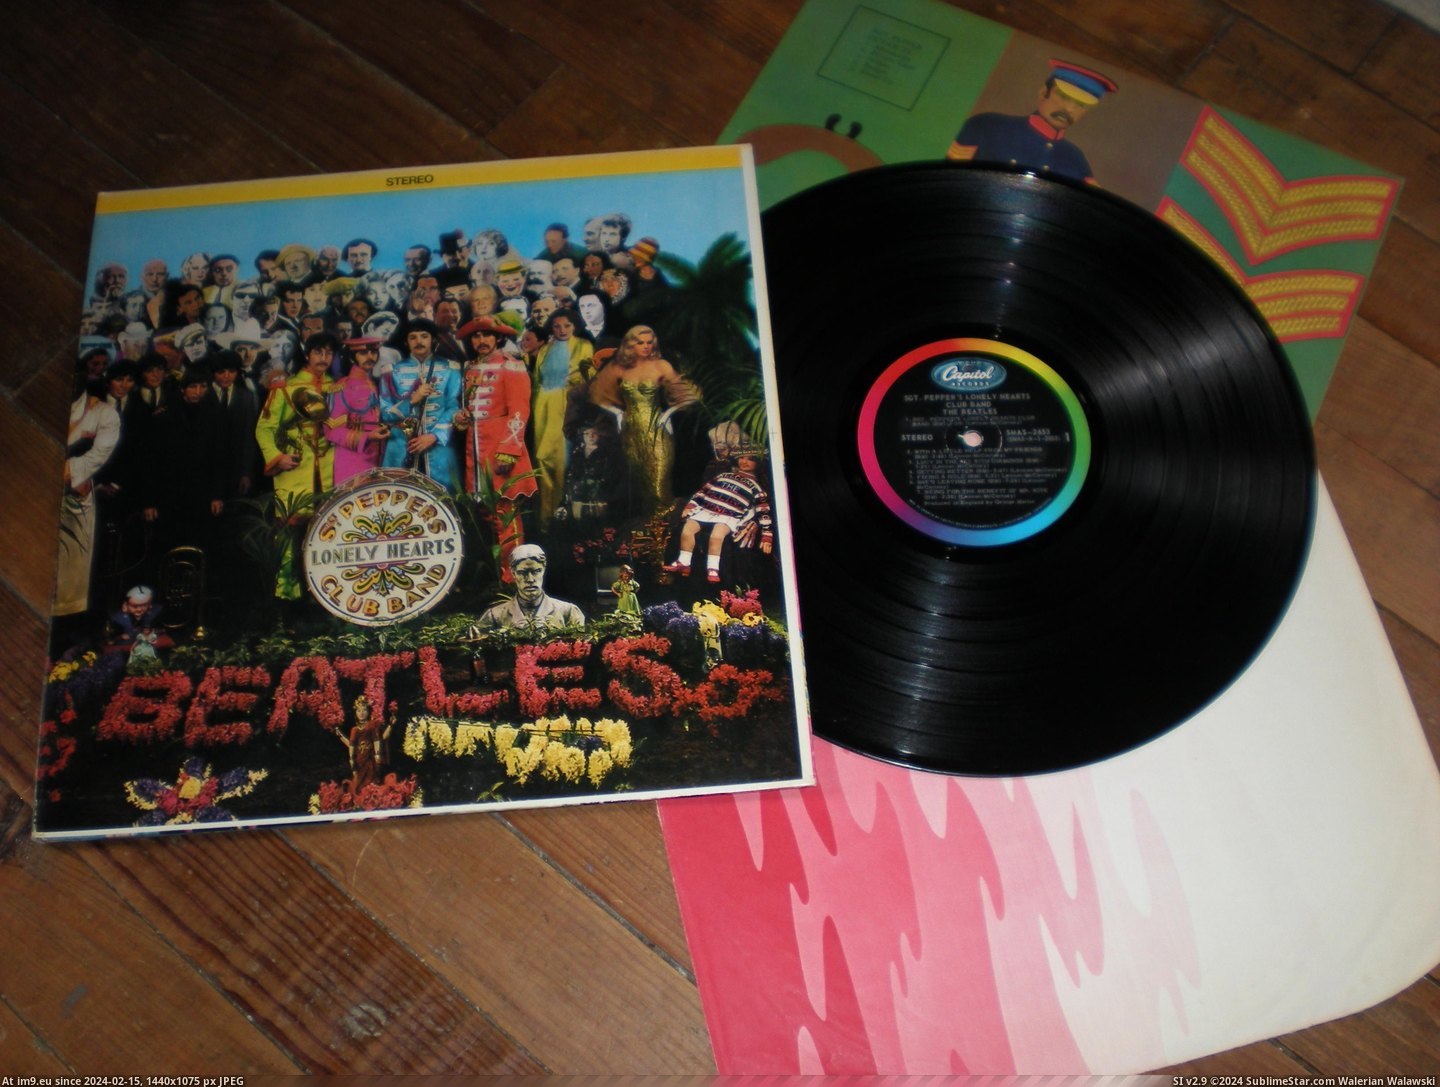 #Sgt  #Capitol Sgt Capitol 1 Pic. (Изображение из альбом new 1))